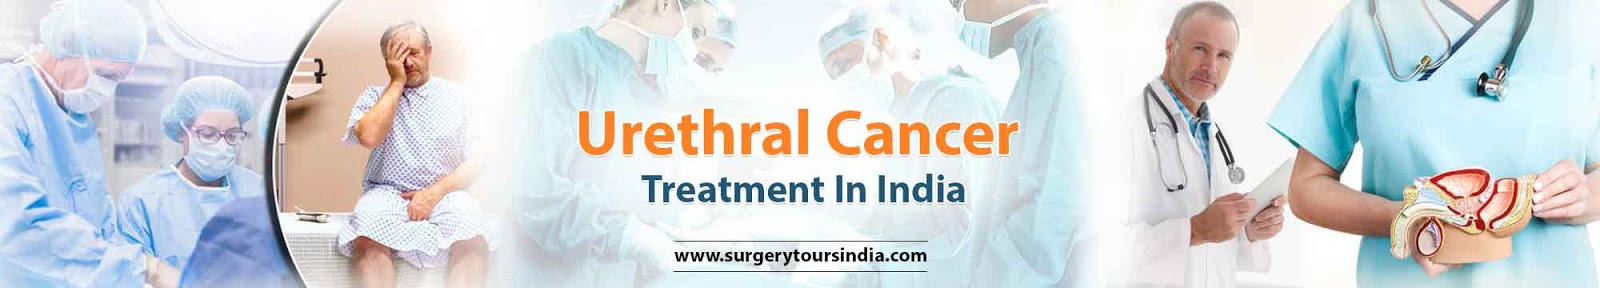 Urethral Cancer Treatment